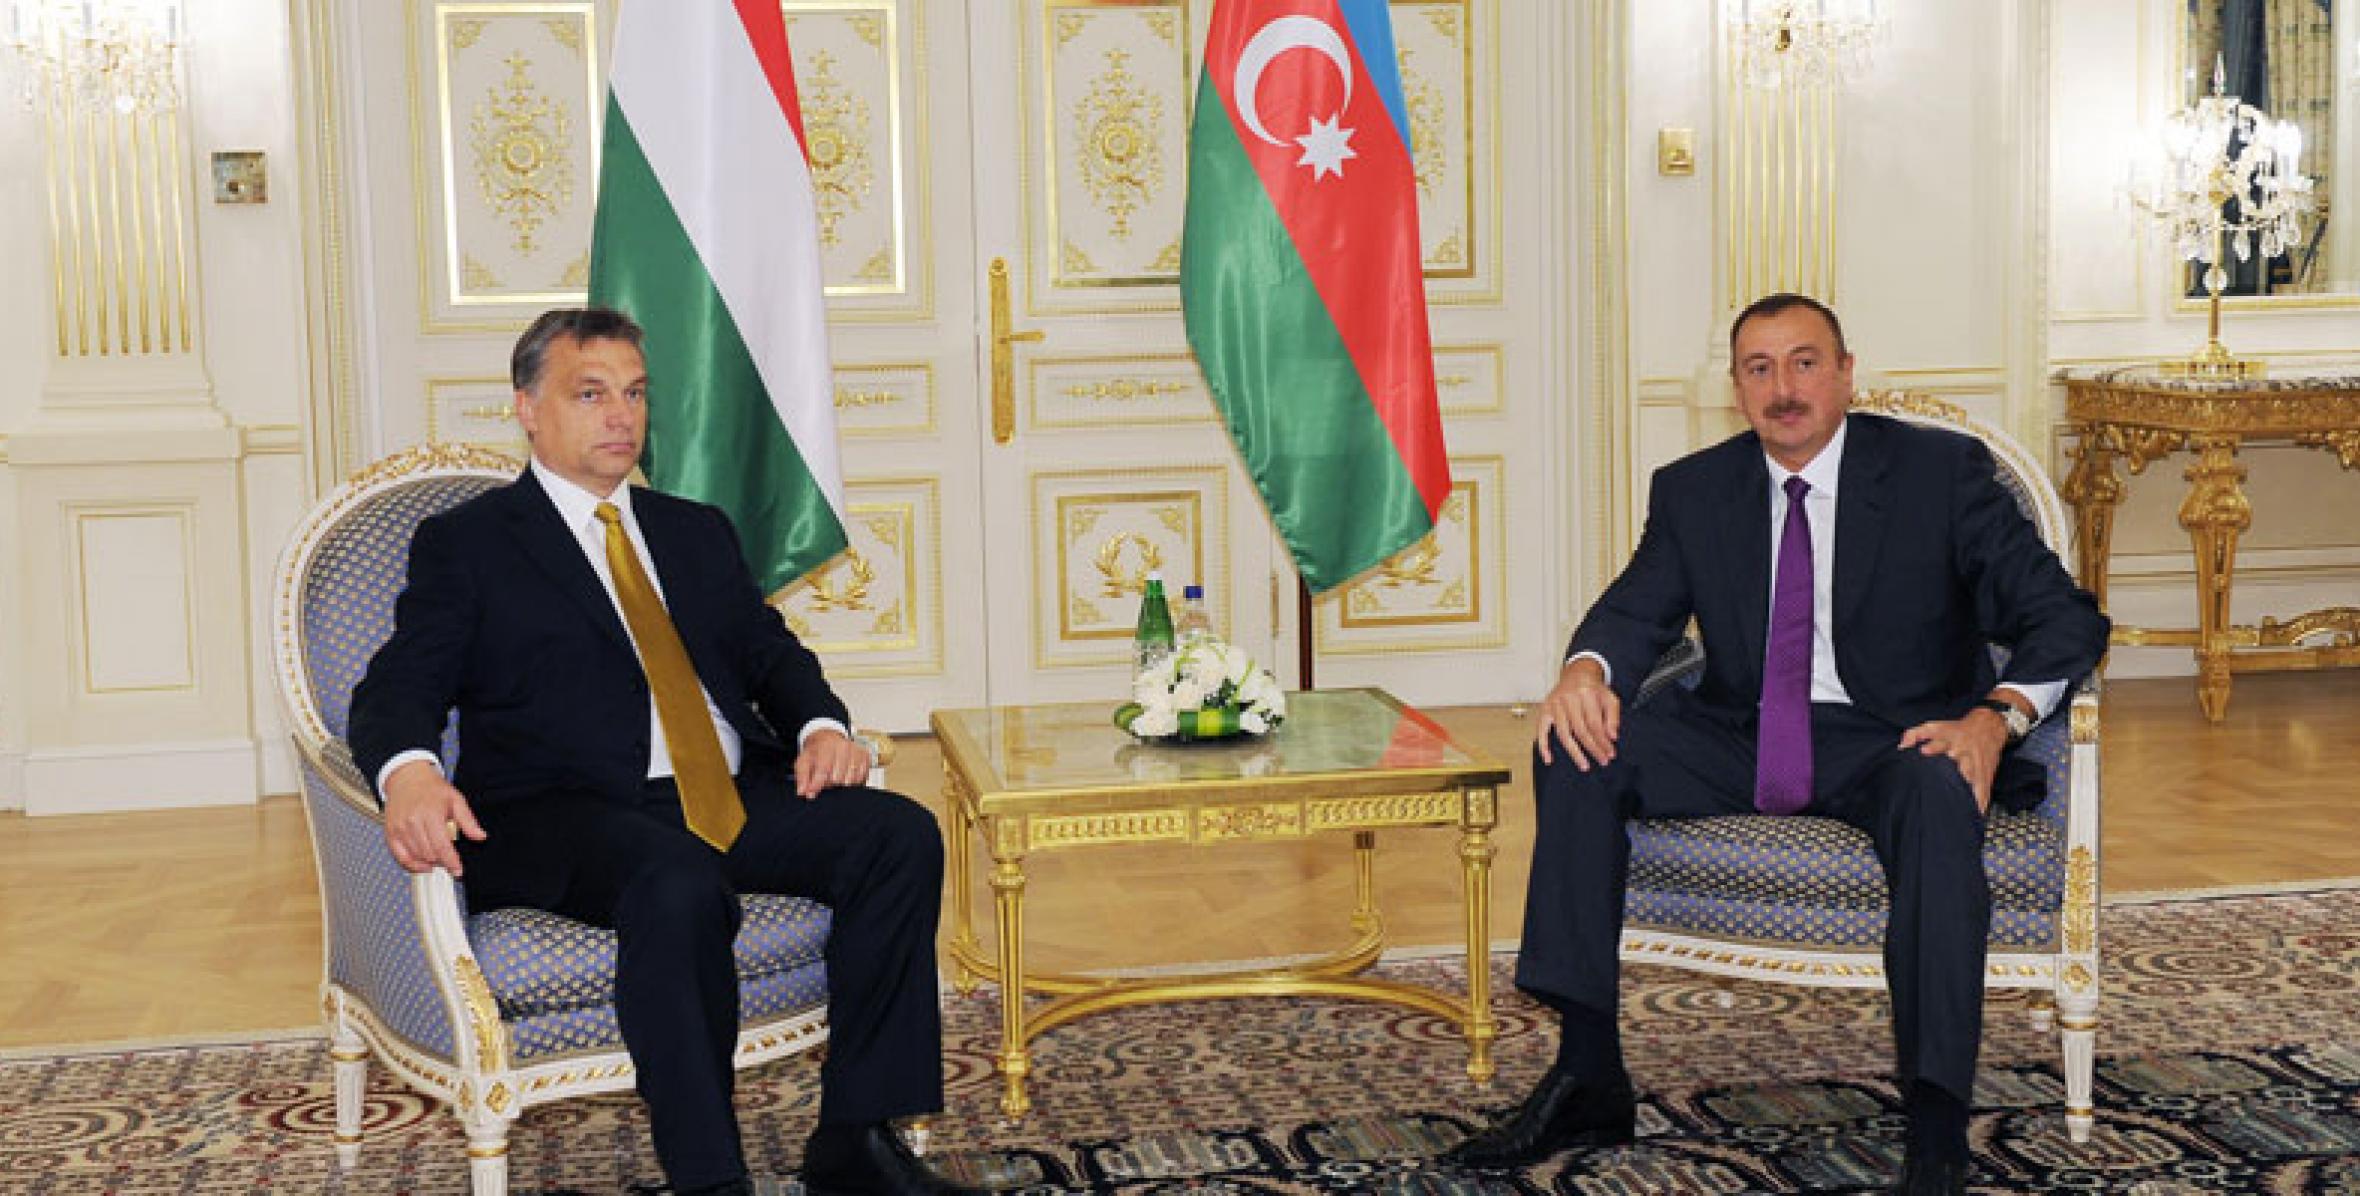 İlham Əliyevin Macarıstanın Baş naziri Viktor Orban ilə görüşü olmuşdur